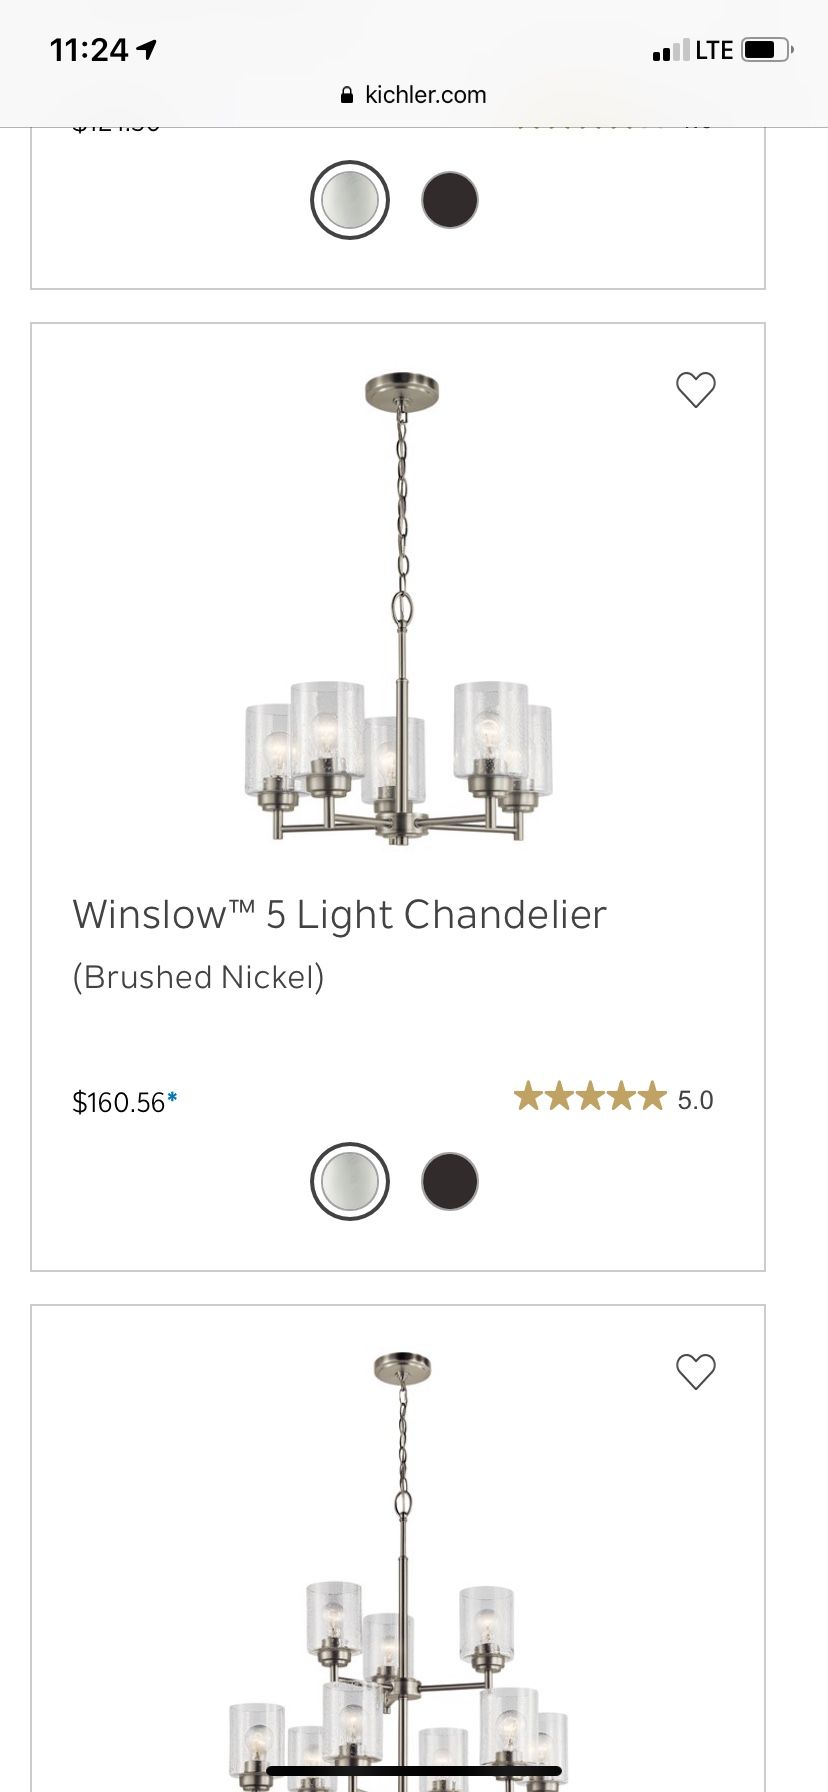 Winslow 5 Light Chandelier - New